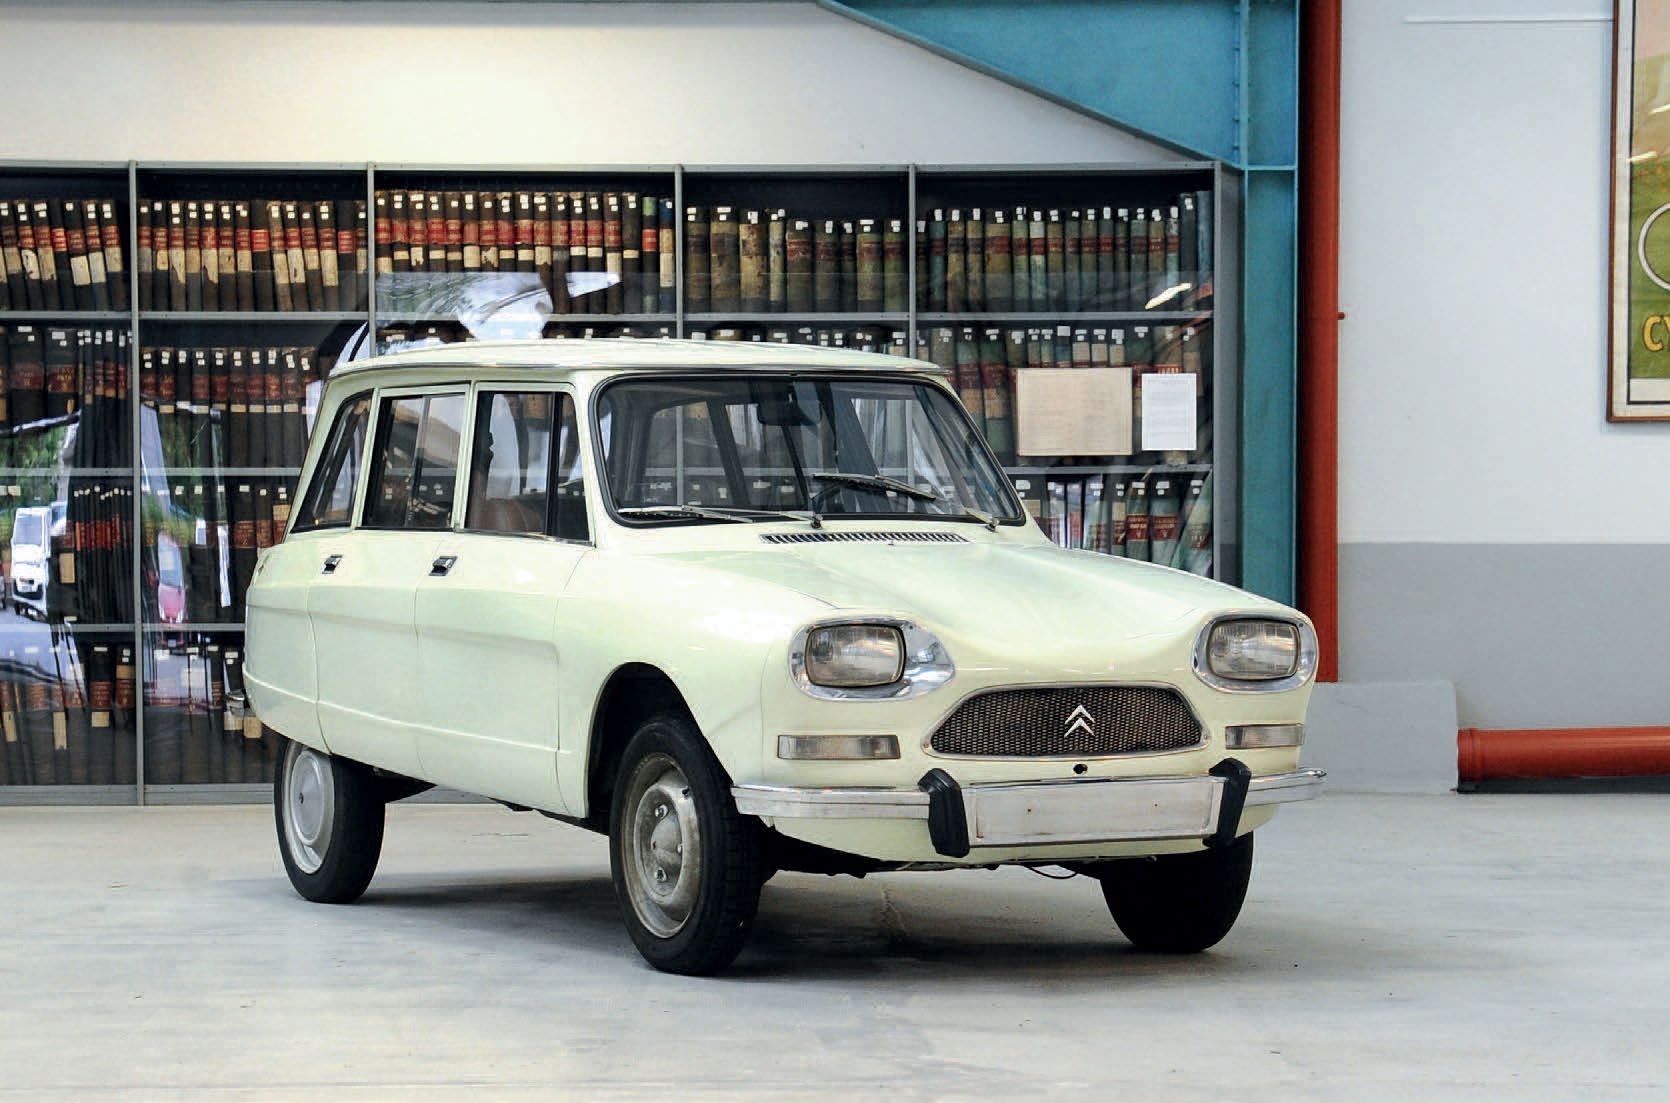 1973 Citroën Ami 8 Break Familial 
Carrosserie repeinte

Intérieur bien conservé&hellip;